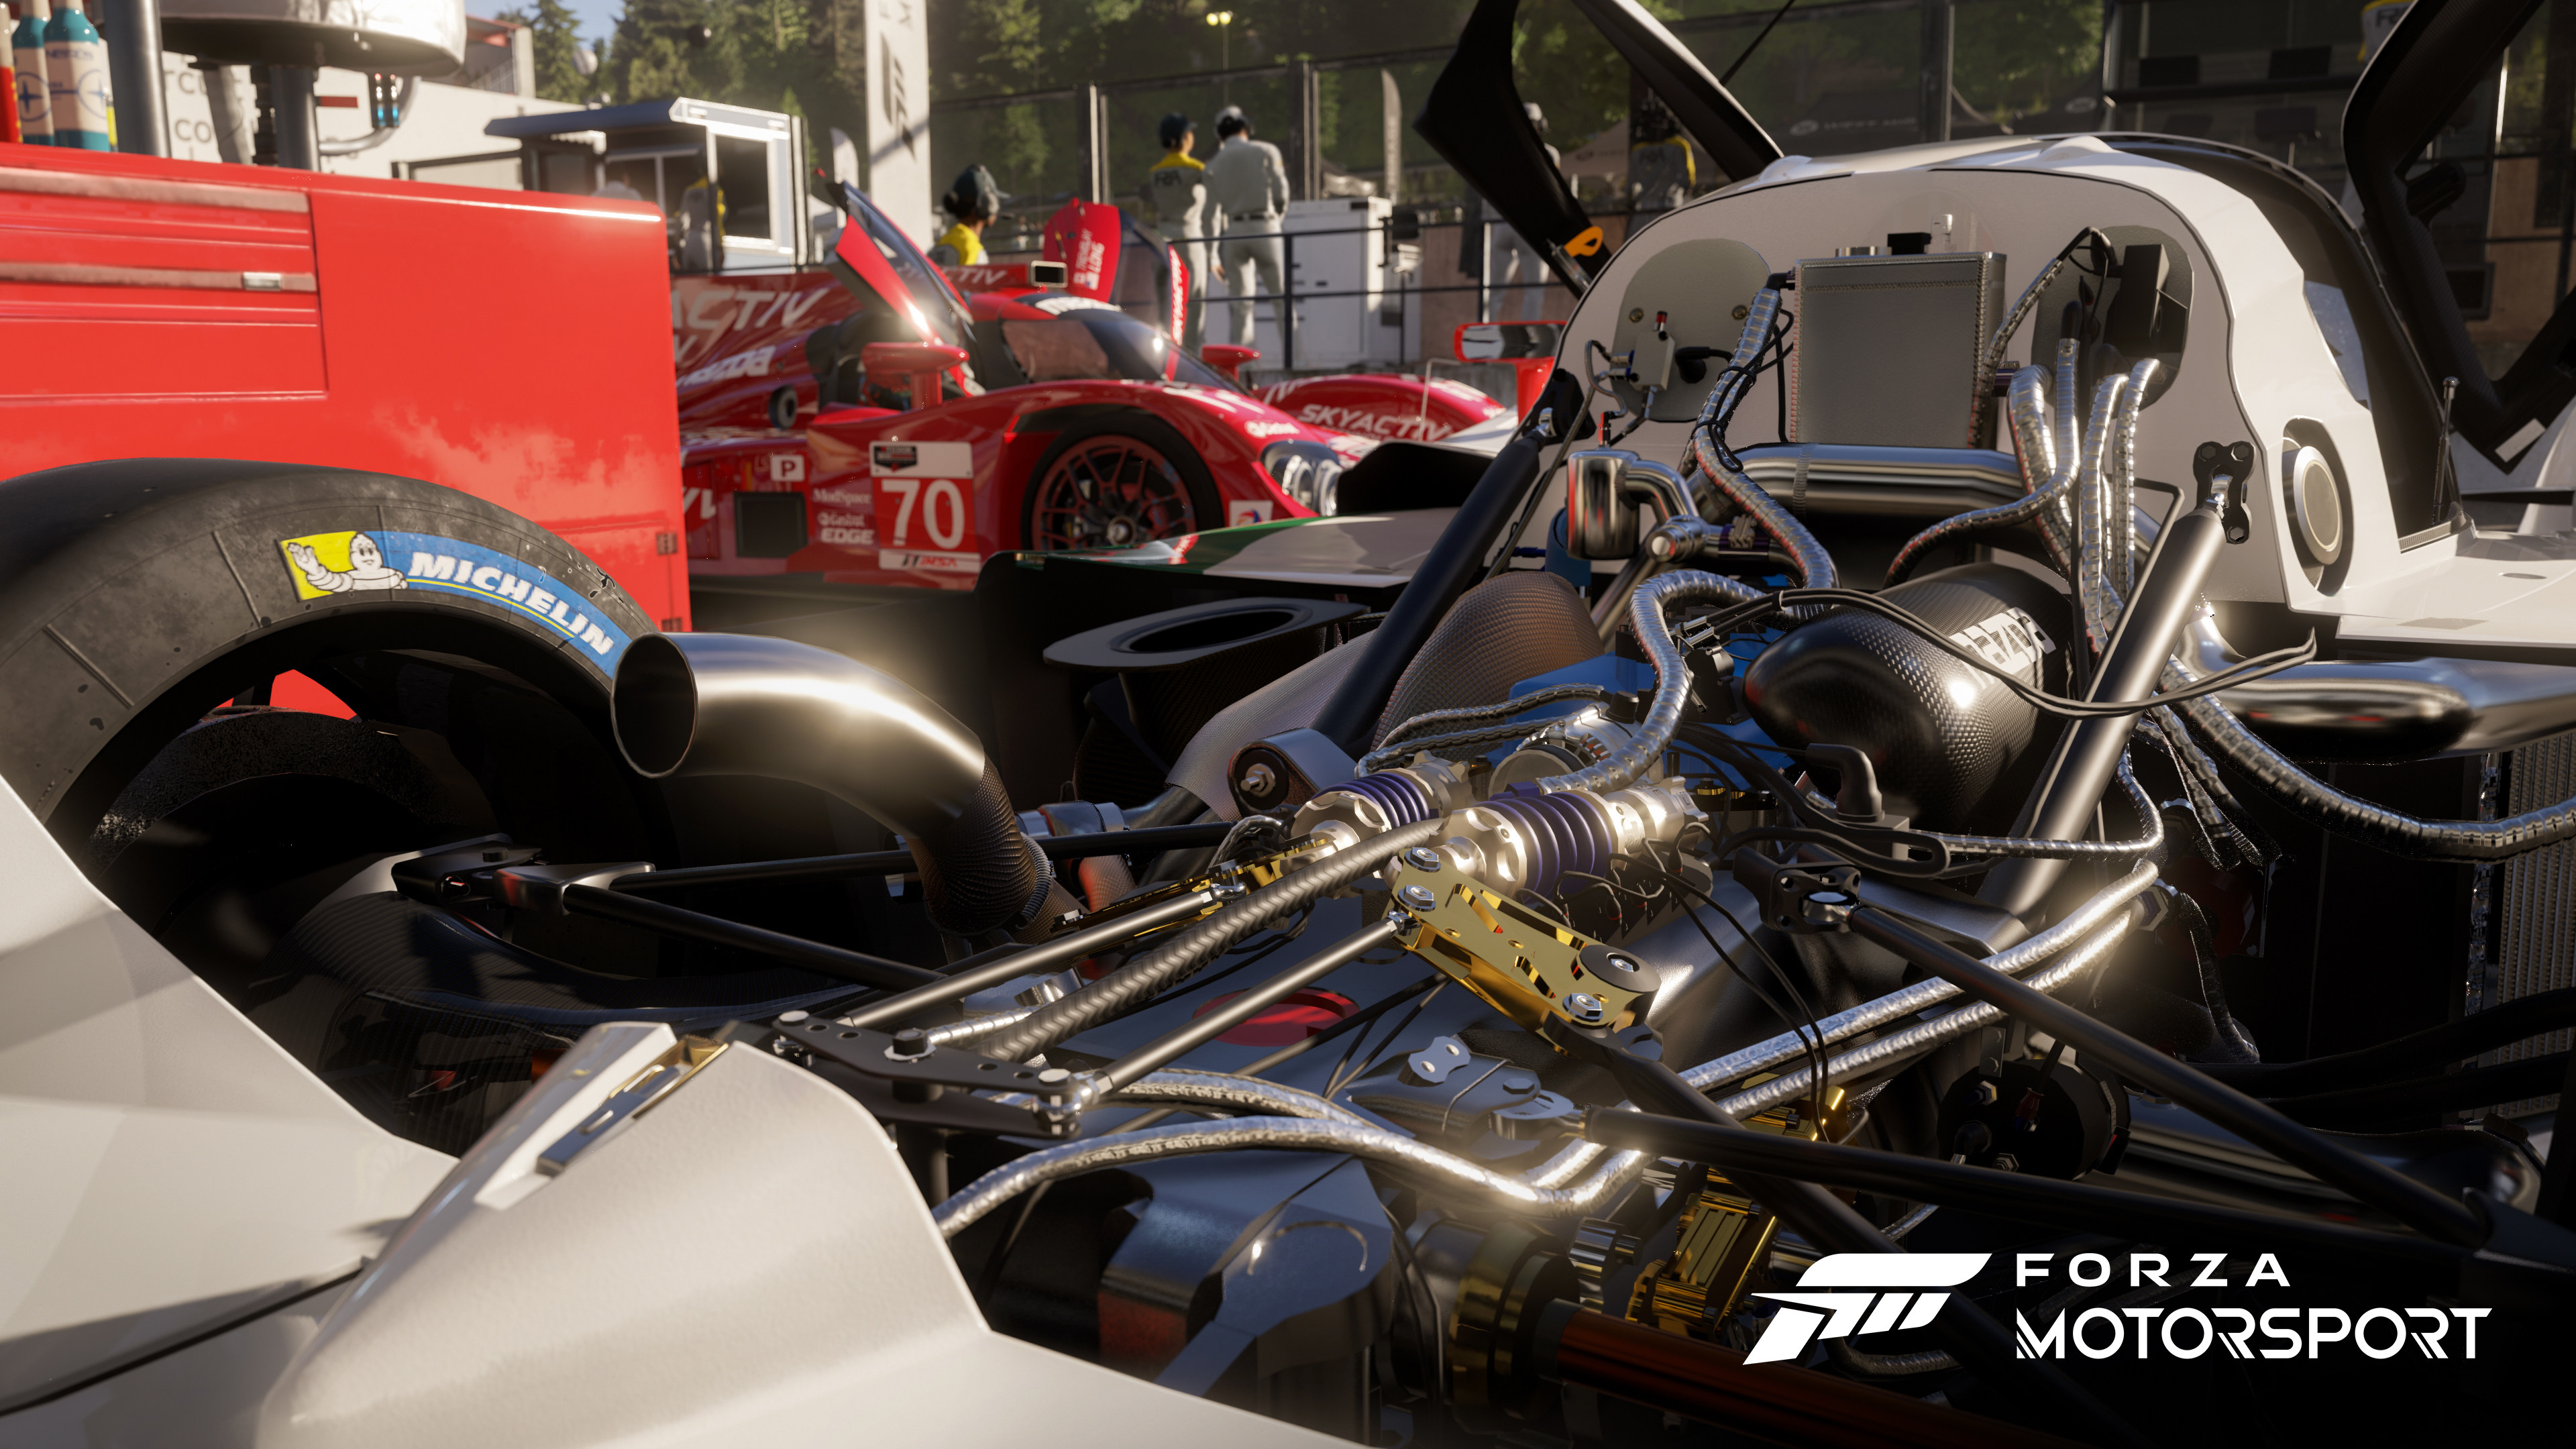 Forza_Motorsport-XboxDeveloperDirectShowcase2023-PressKit-03-16x9_WM-1b1a8e12b5c2ba4db987.jpg